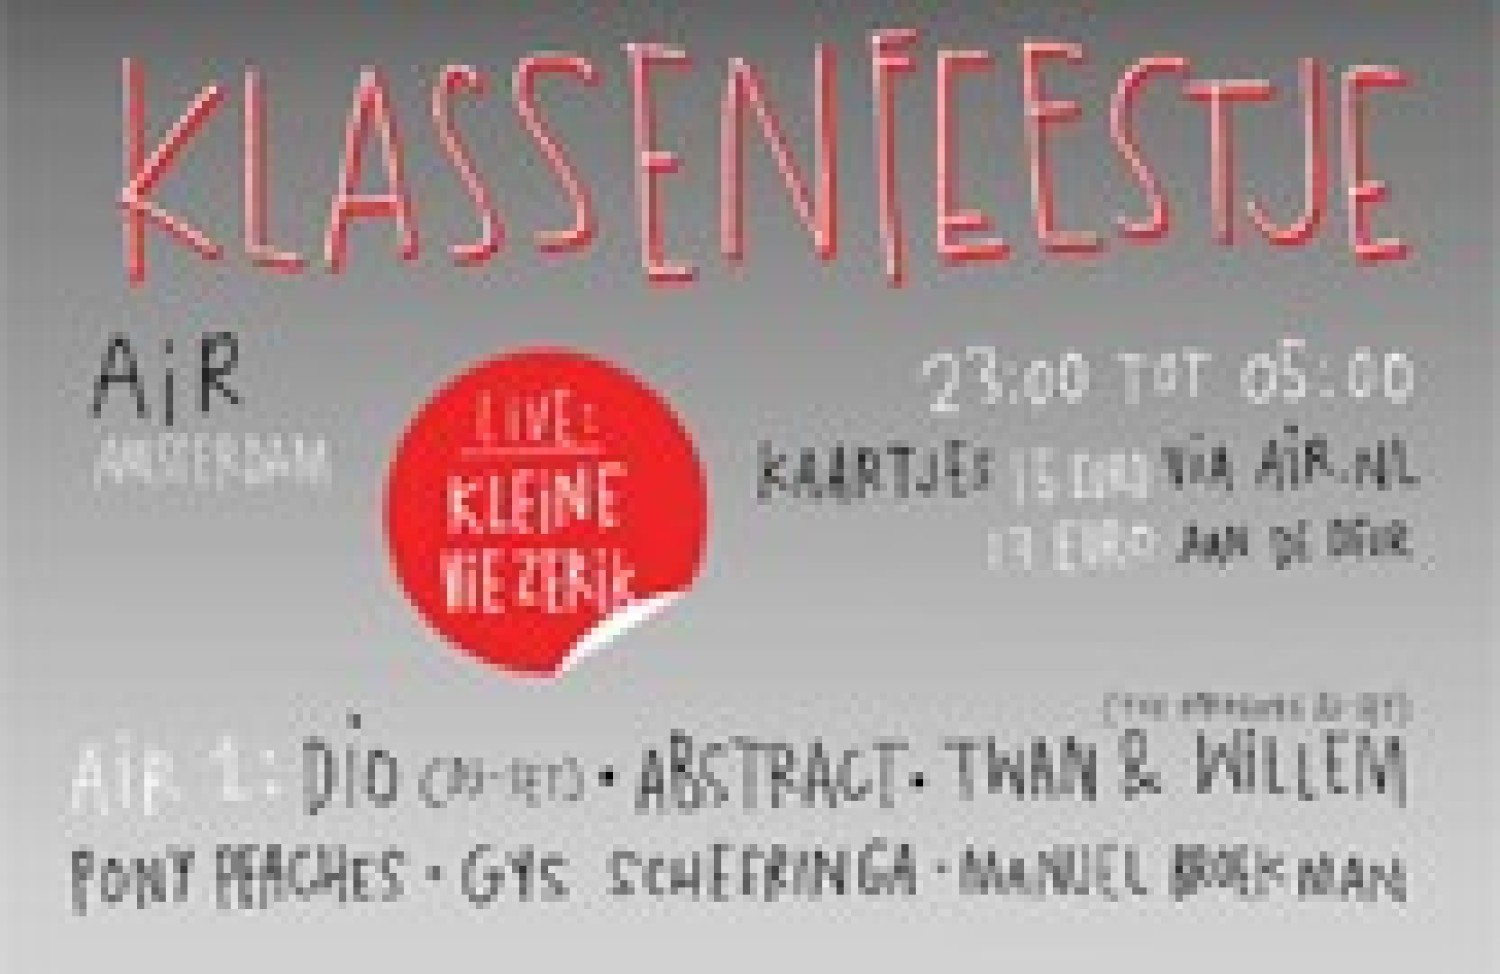 Party nieuws: Het klassenfeestje, 15 juni AIR Amsterdam